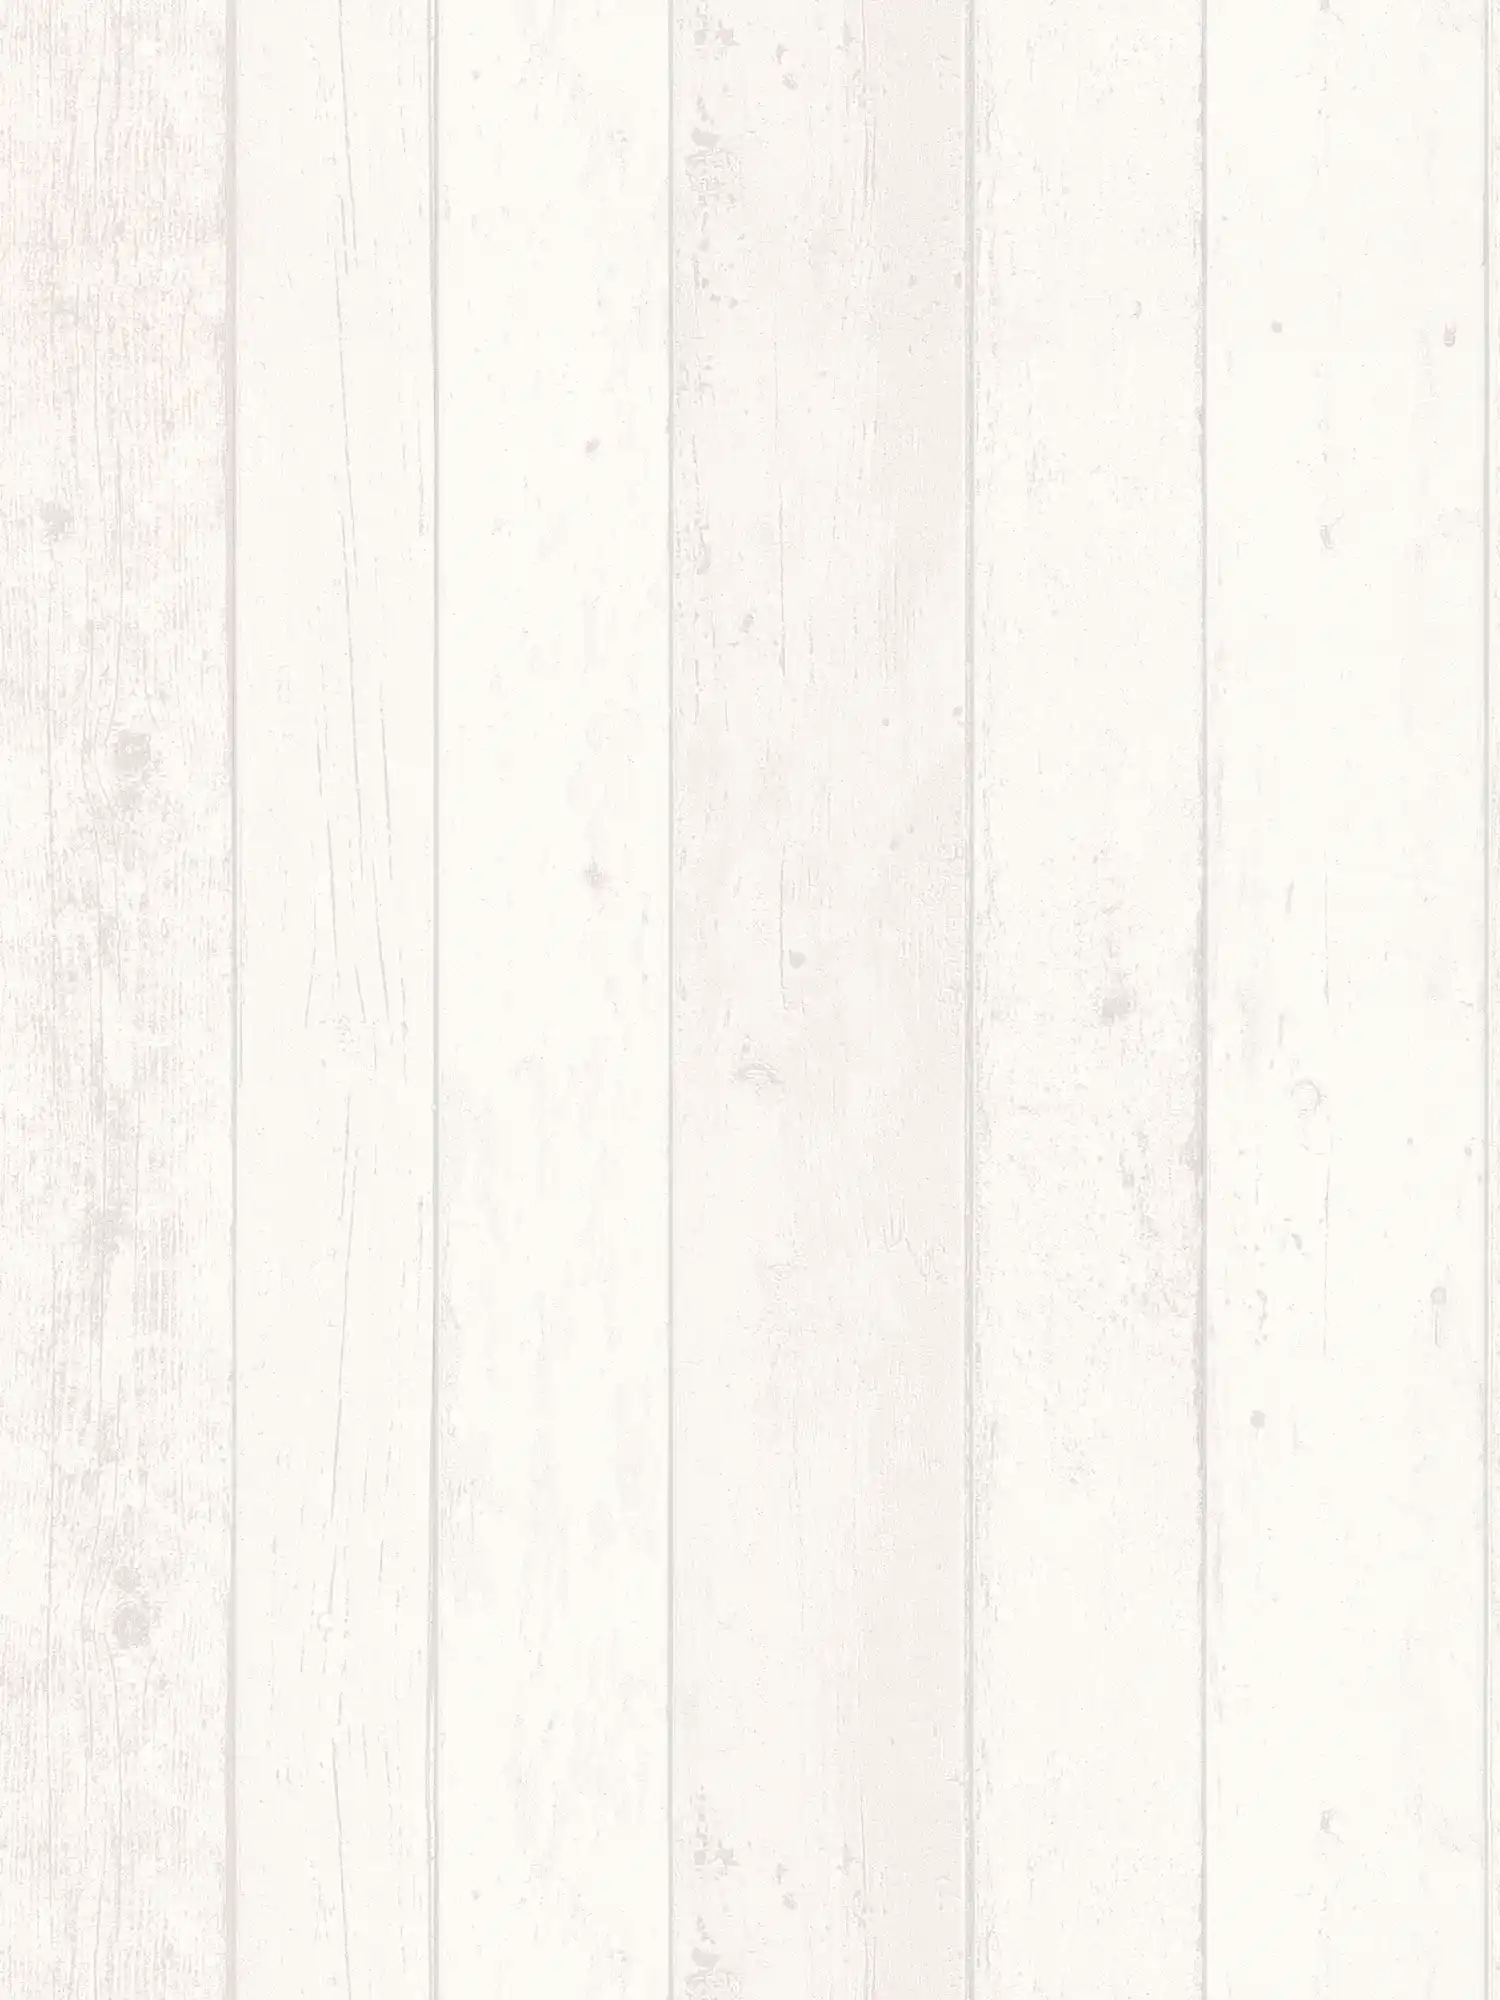         Holzoptik Tapete mit Maserung im Shabby Chic Stil – Weiß, Grau
    